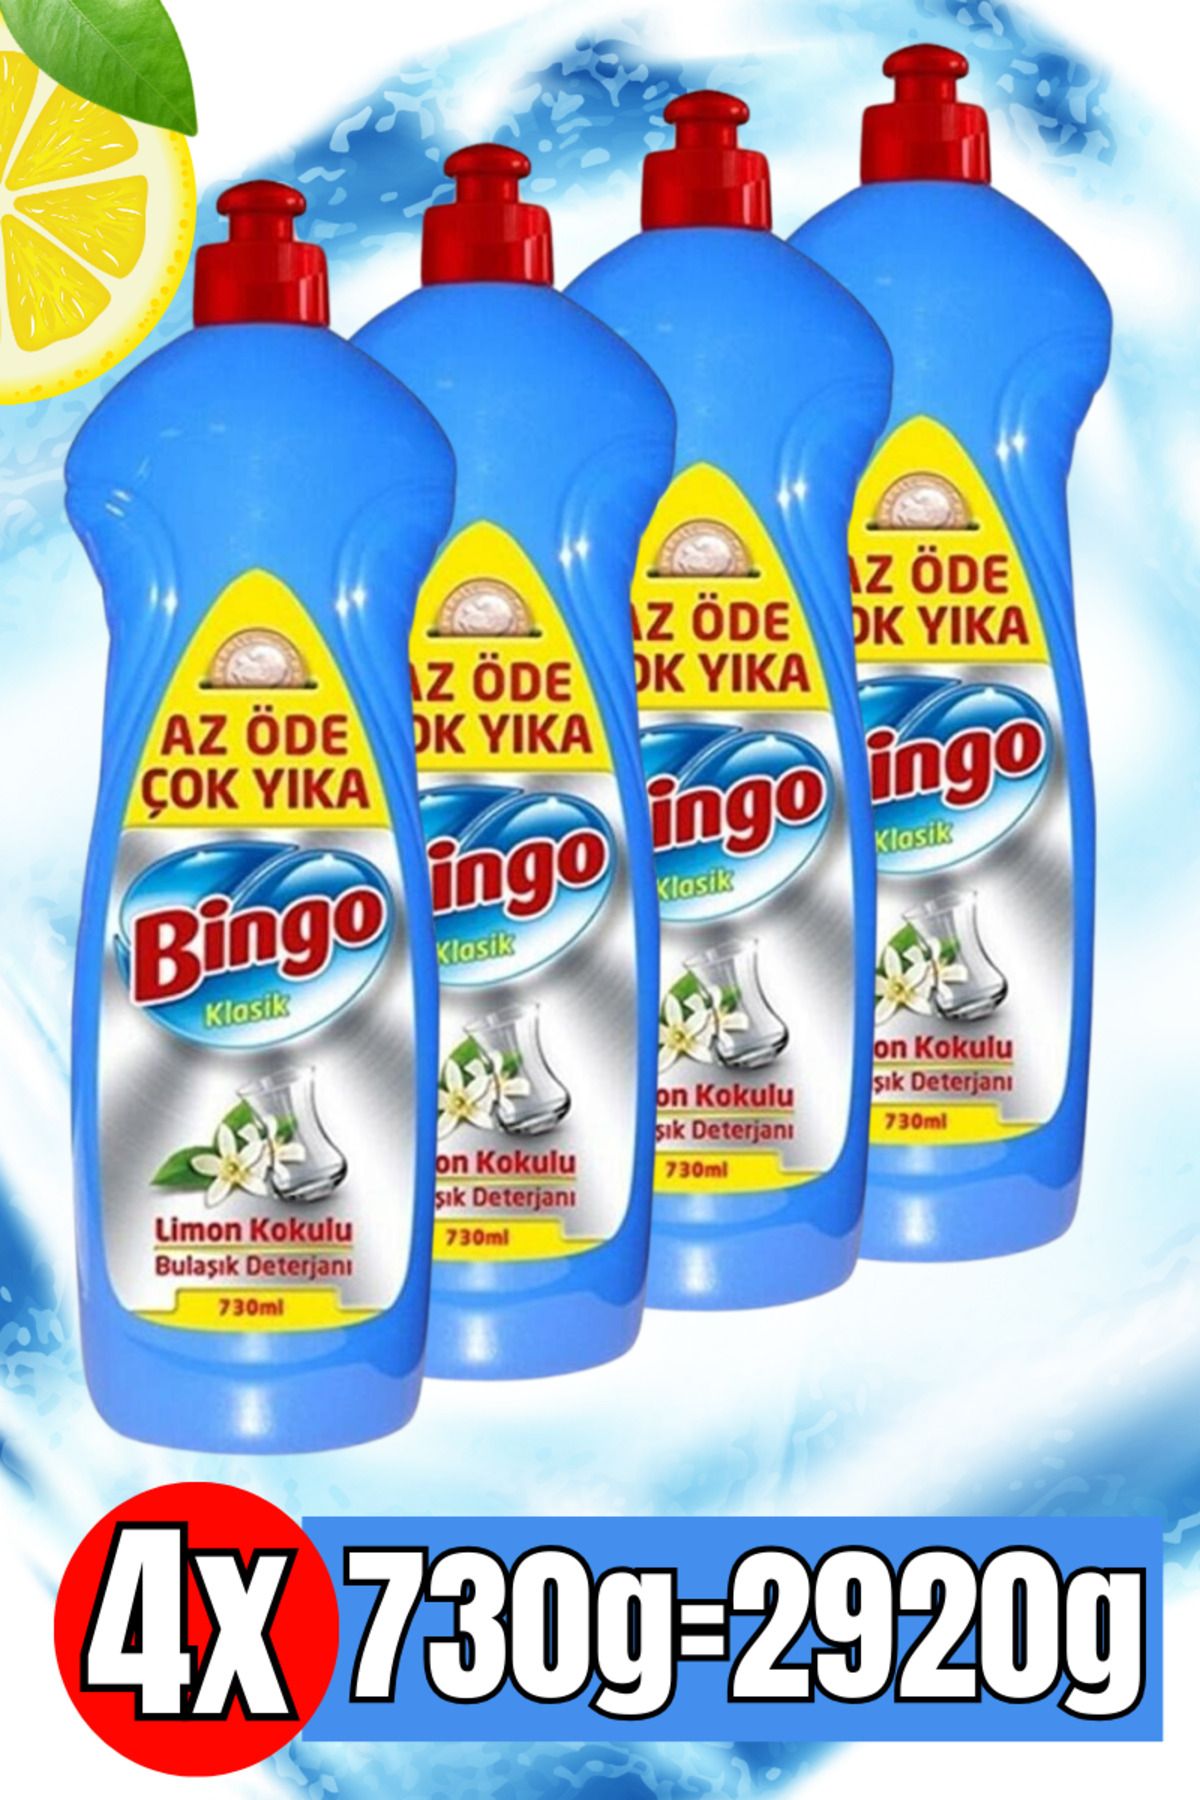 Bingo Elde Yıkama Sıvı Bulaşık Deterjanı 4 X 730g Limon Etkisi Tüm yağı kiri Çözer atar